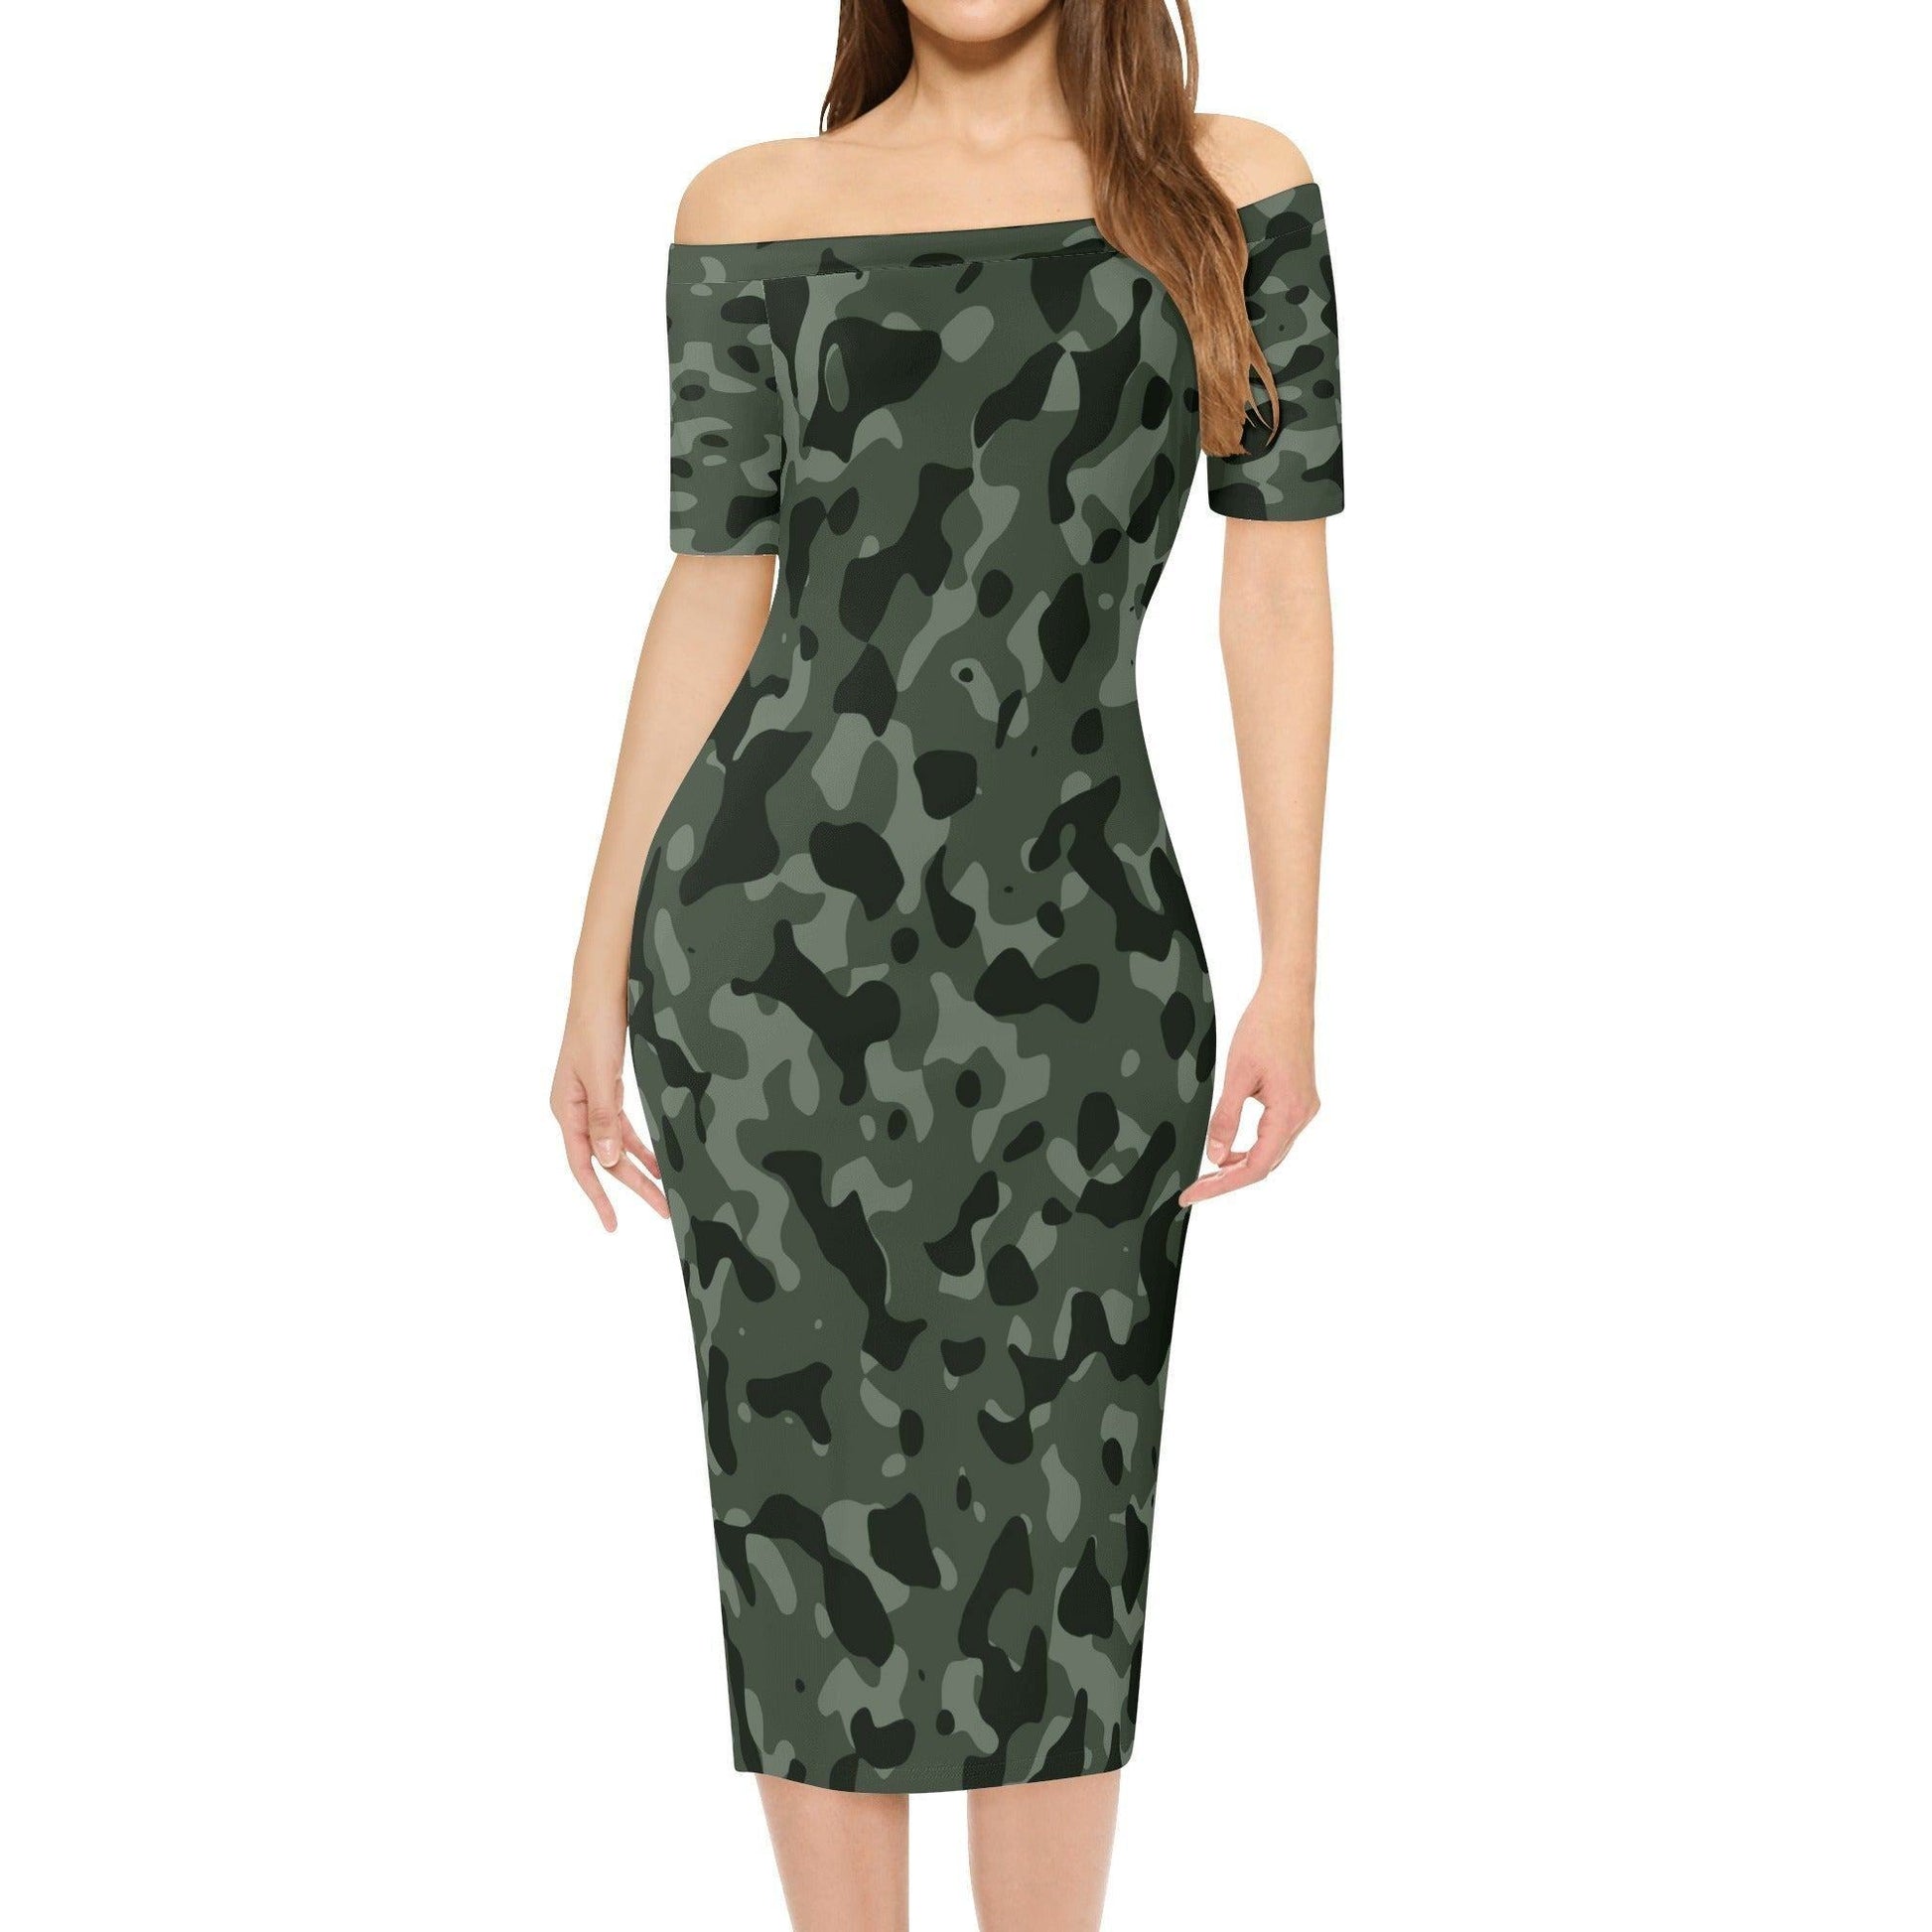 Green Camouflage Off-Shoulder-Kleid -- Green Camouflage Off-Shoulder-Kleid - undefined Off-Shoulder-Kleid | JLR Design